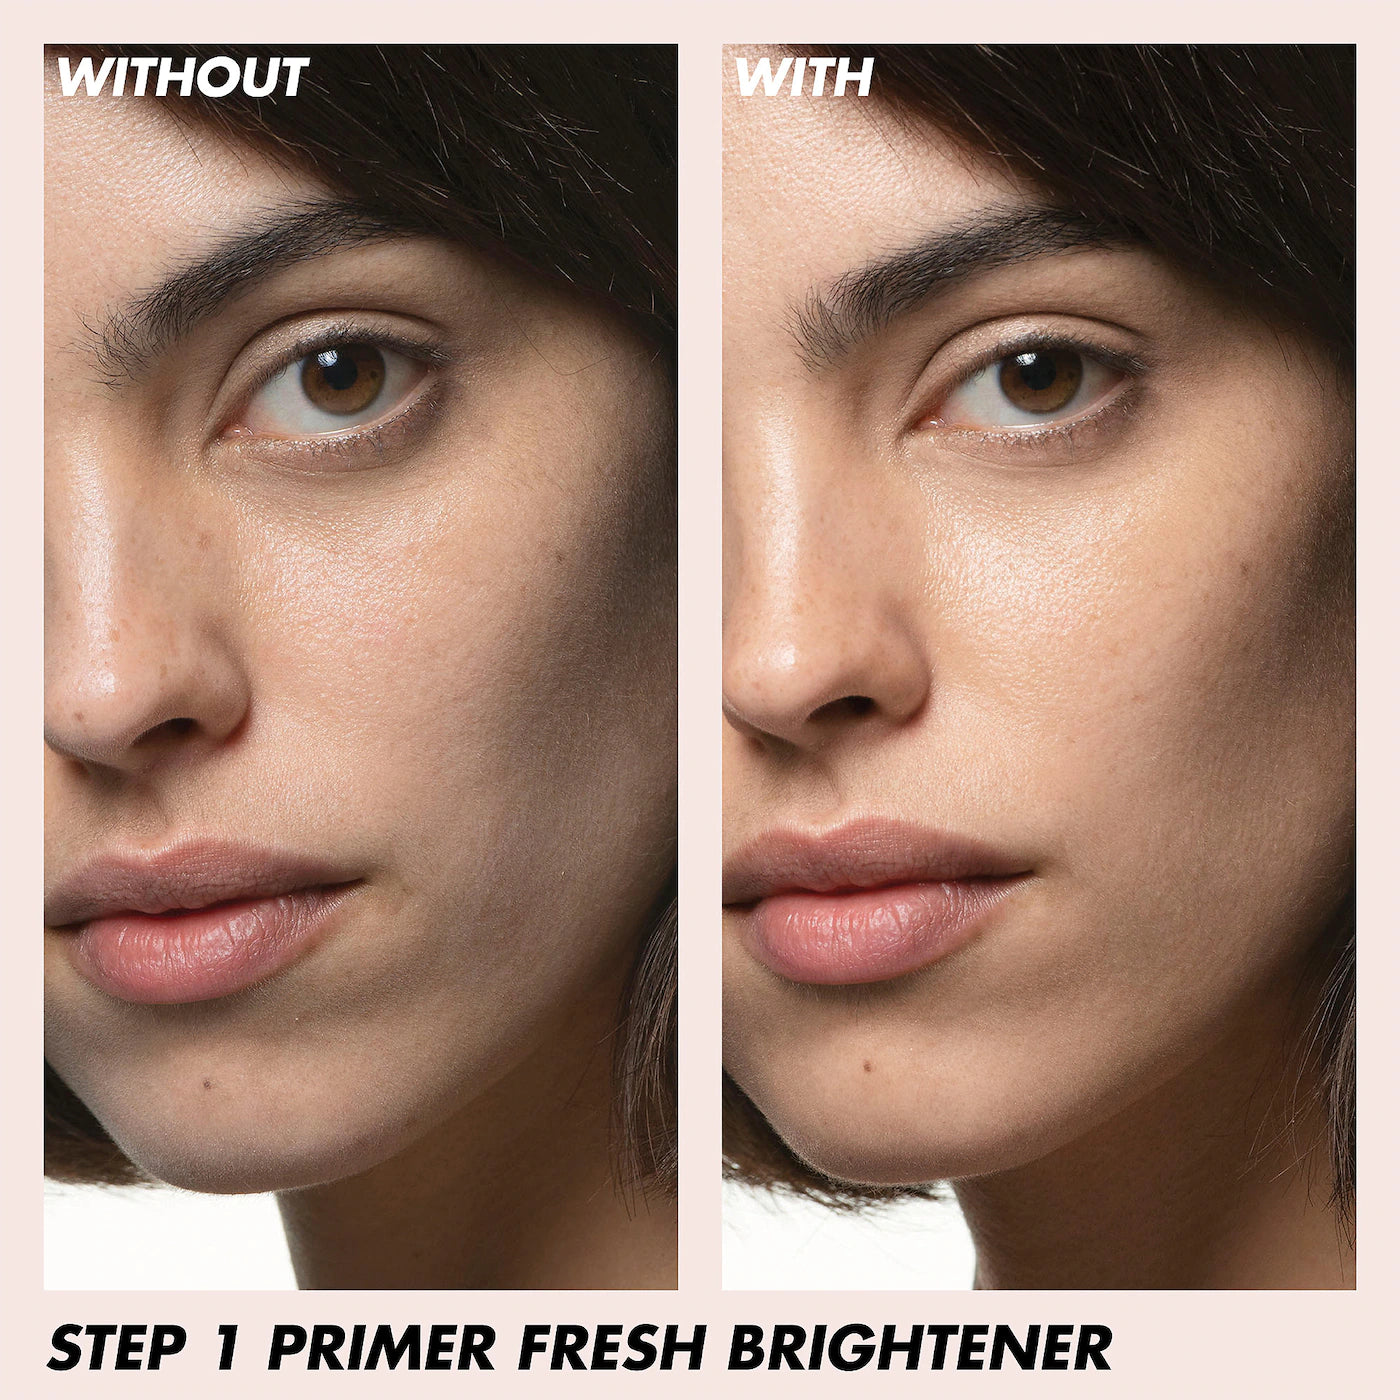 Make Up For Ever Step1 Primer Fresh Brightner